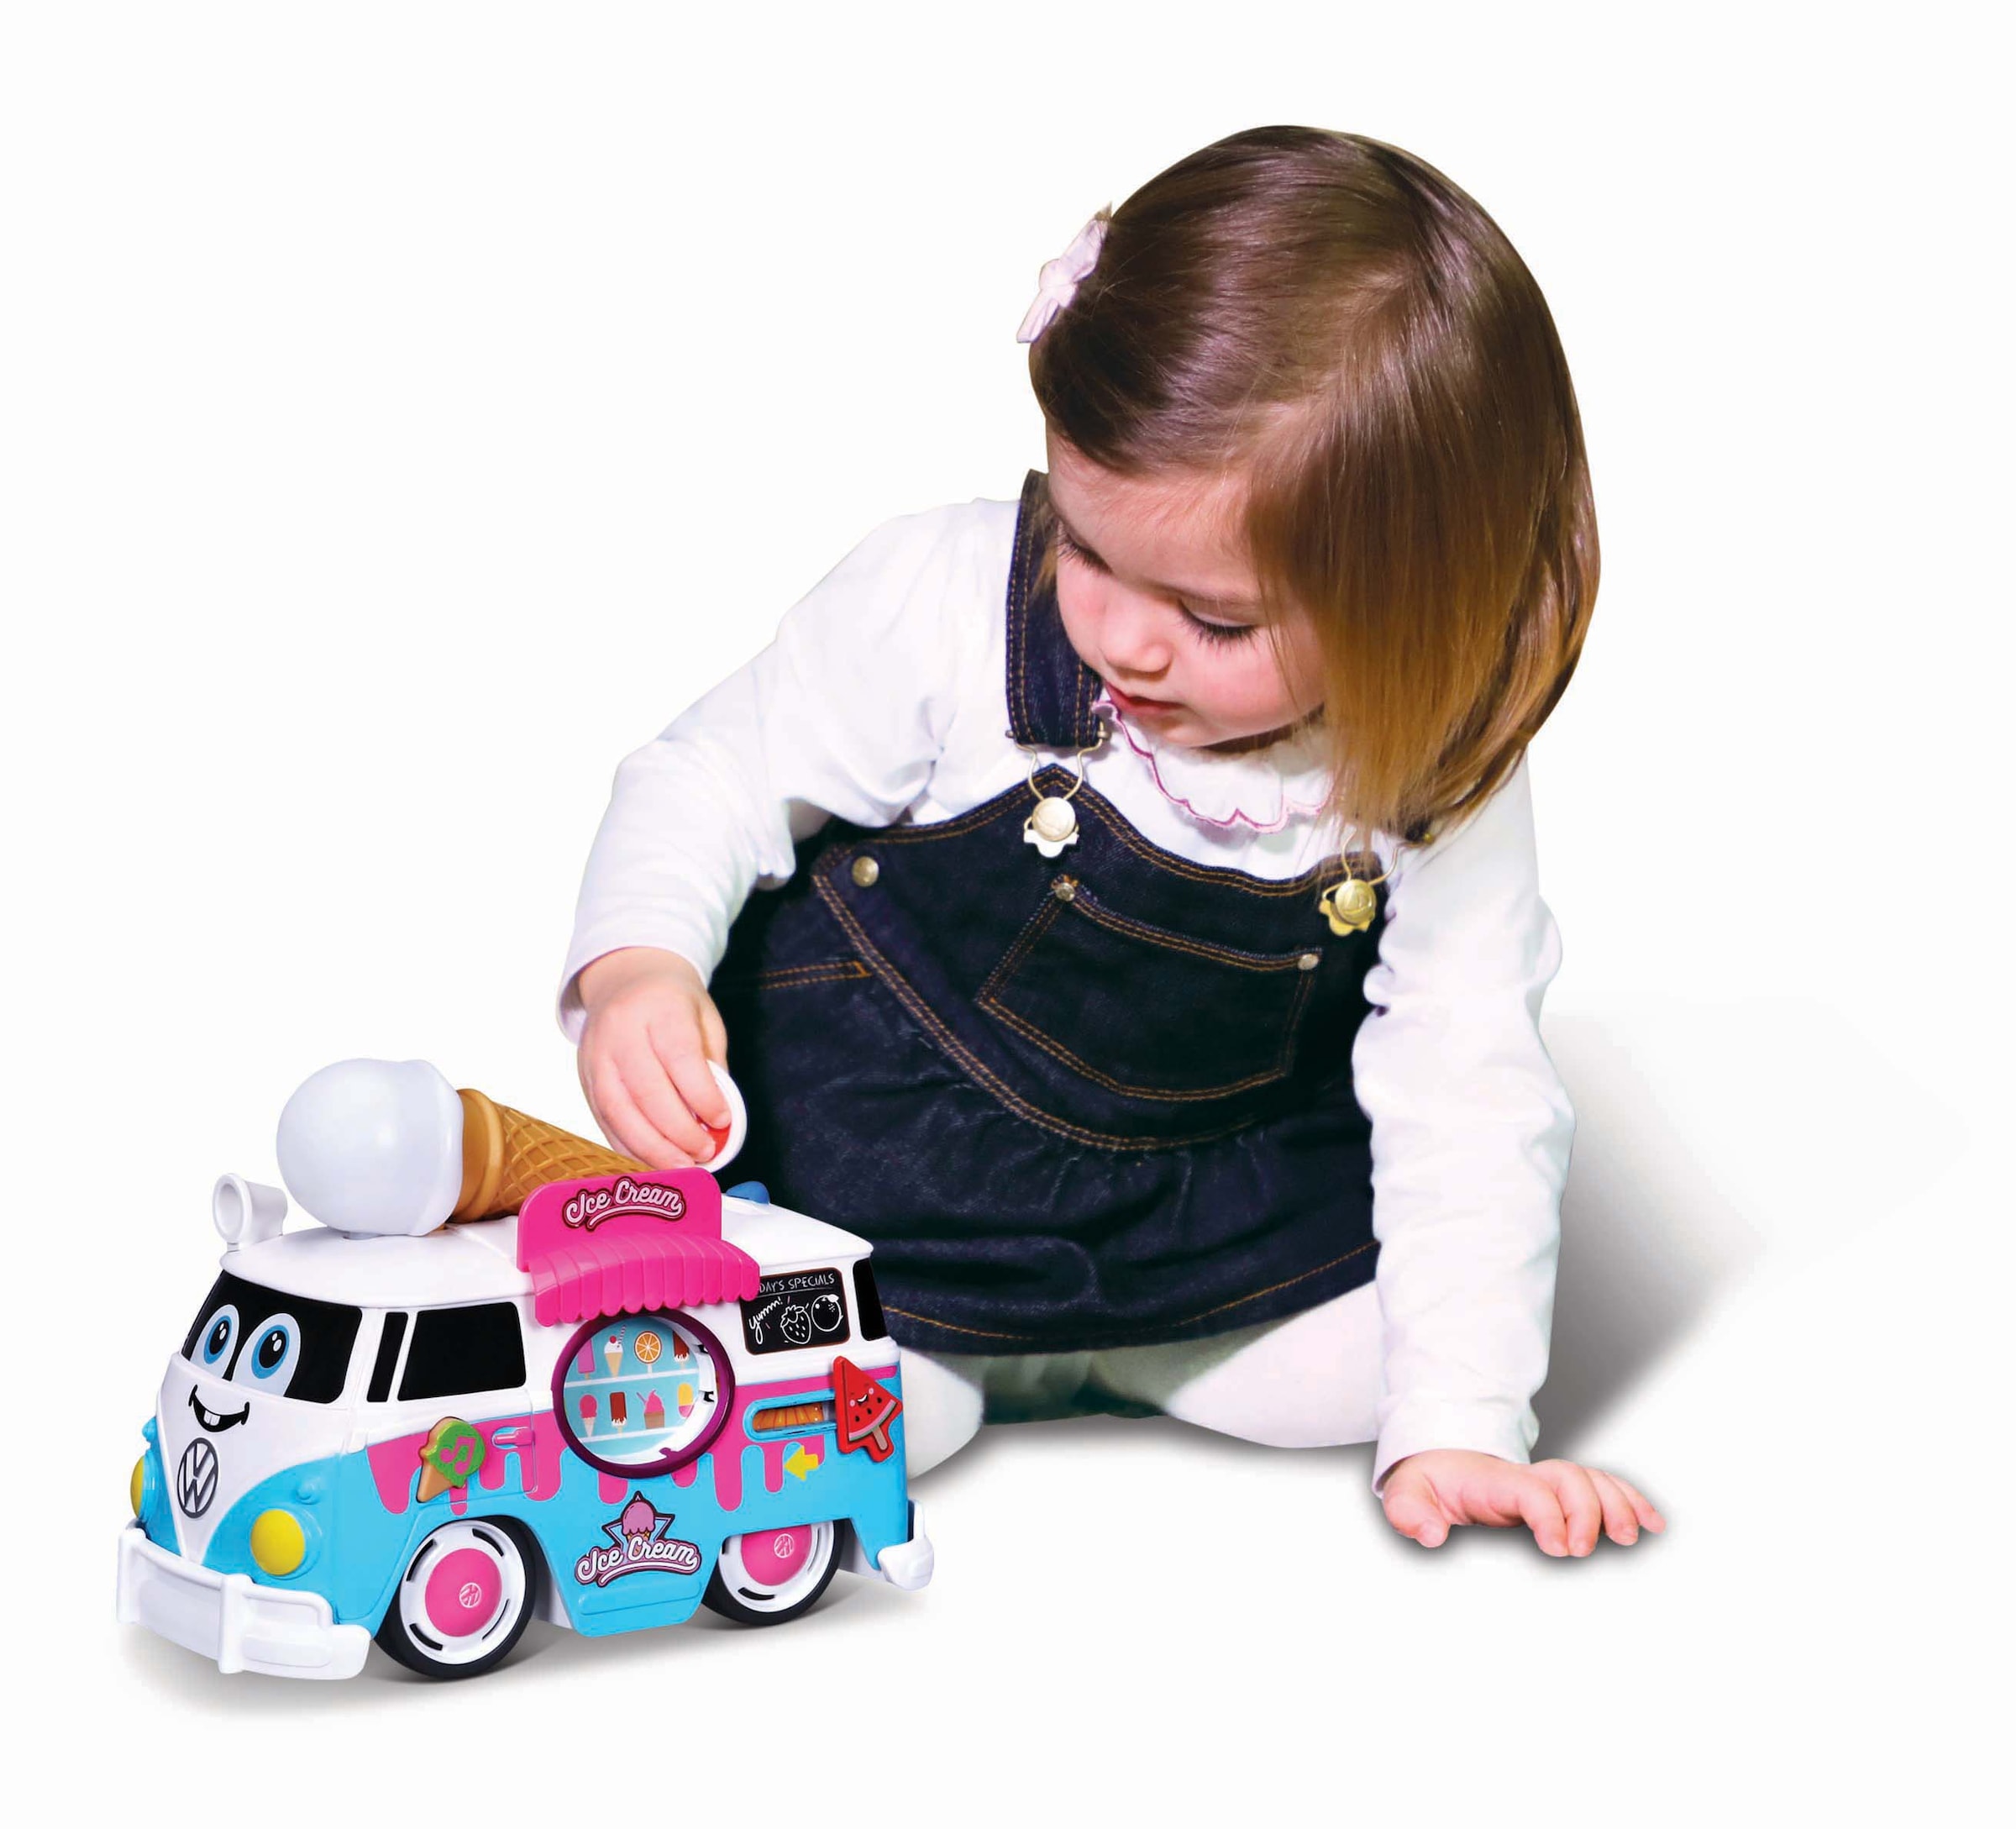 bbJunior Spielzeug-Bus »VW Magic Ice Cream Bus«, mit Licht- und Soundeffekten